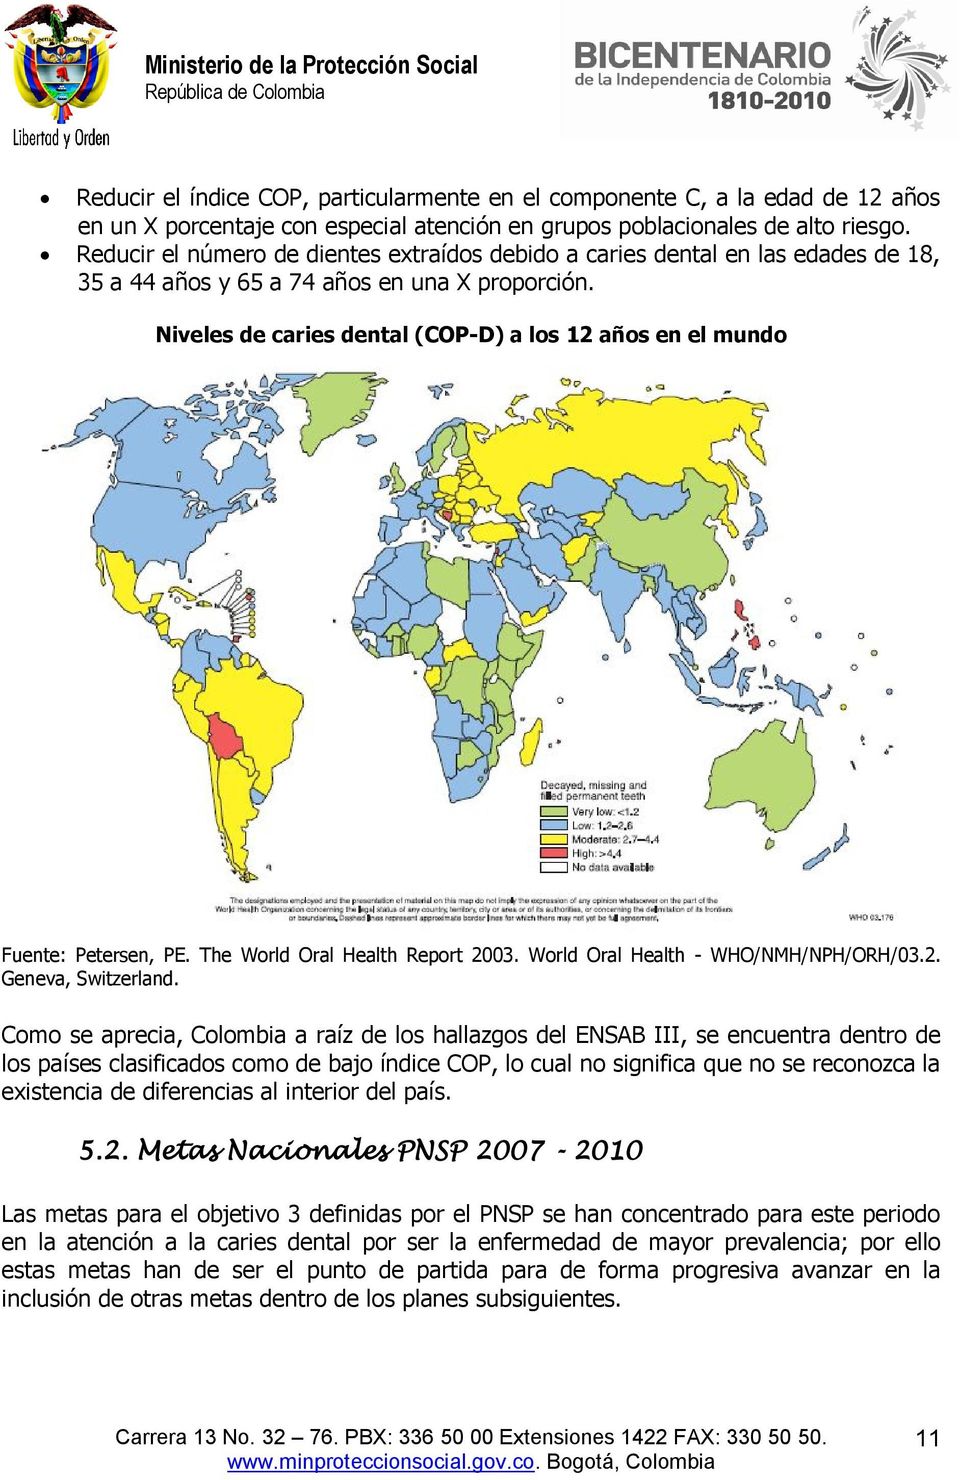 Niveles de caries dental (COP-D) a los 12 años en el mundo Fuente: Petersen, PE. The World Oral Health Report 2003. World Oral Health - WHO/NMH/NPH/ORH/03.2. Geneva, Switzerland.